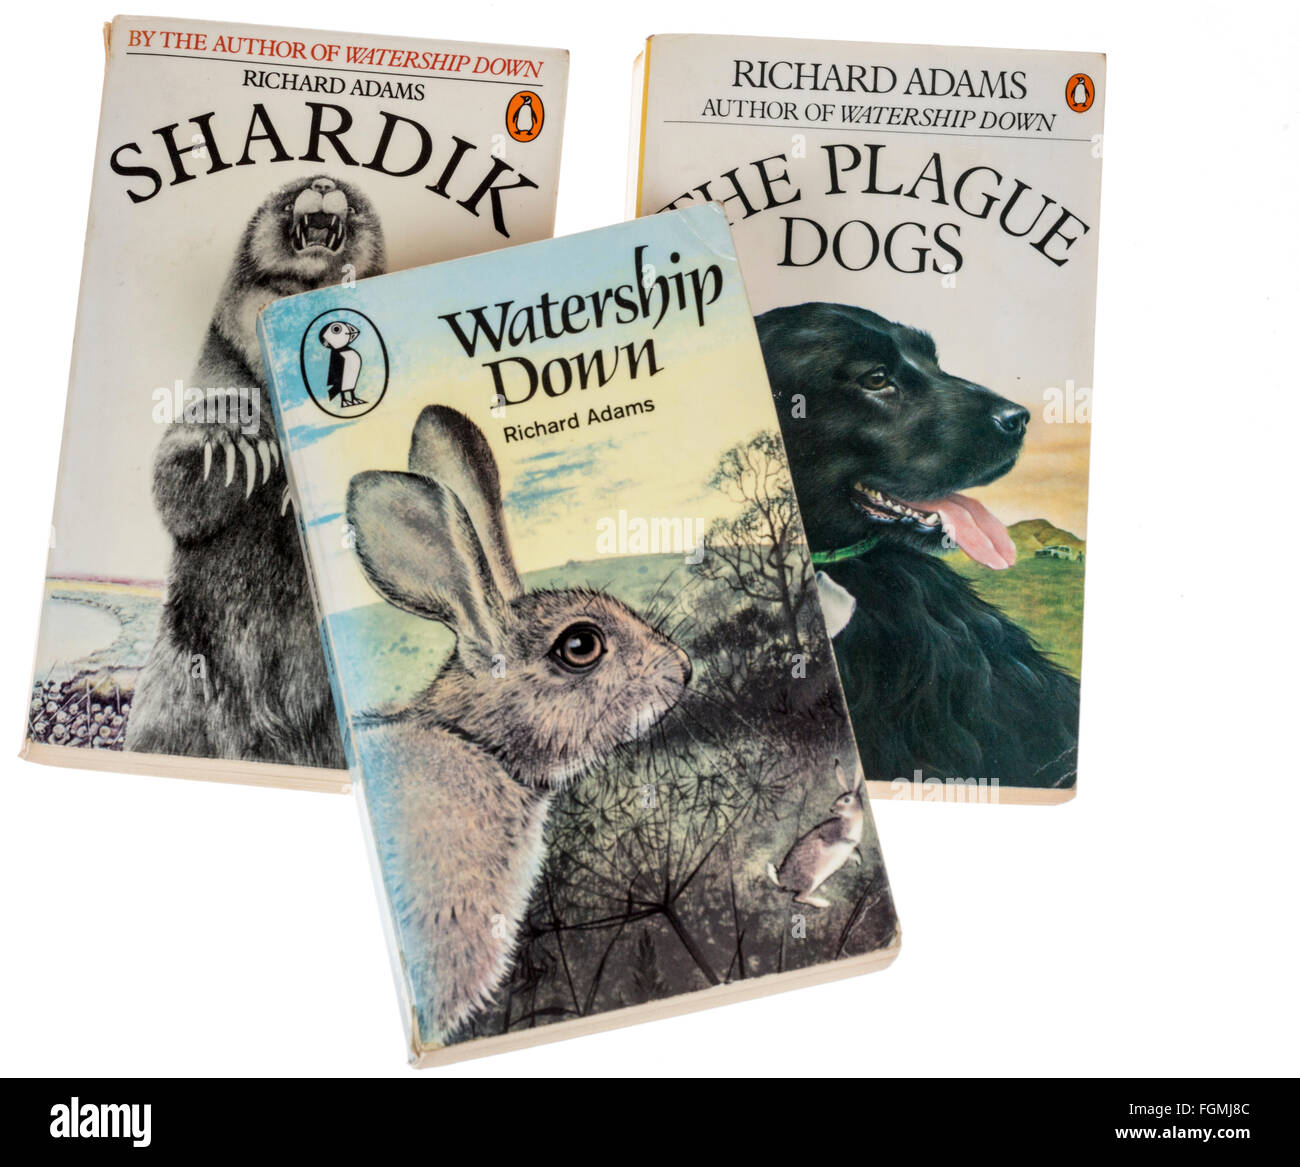 Libros de Richard Adams publicada en rústica por Puffin, Shardik, Watership  Down y la plaga de perros Fotografía de stock - Alamy